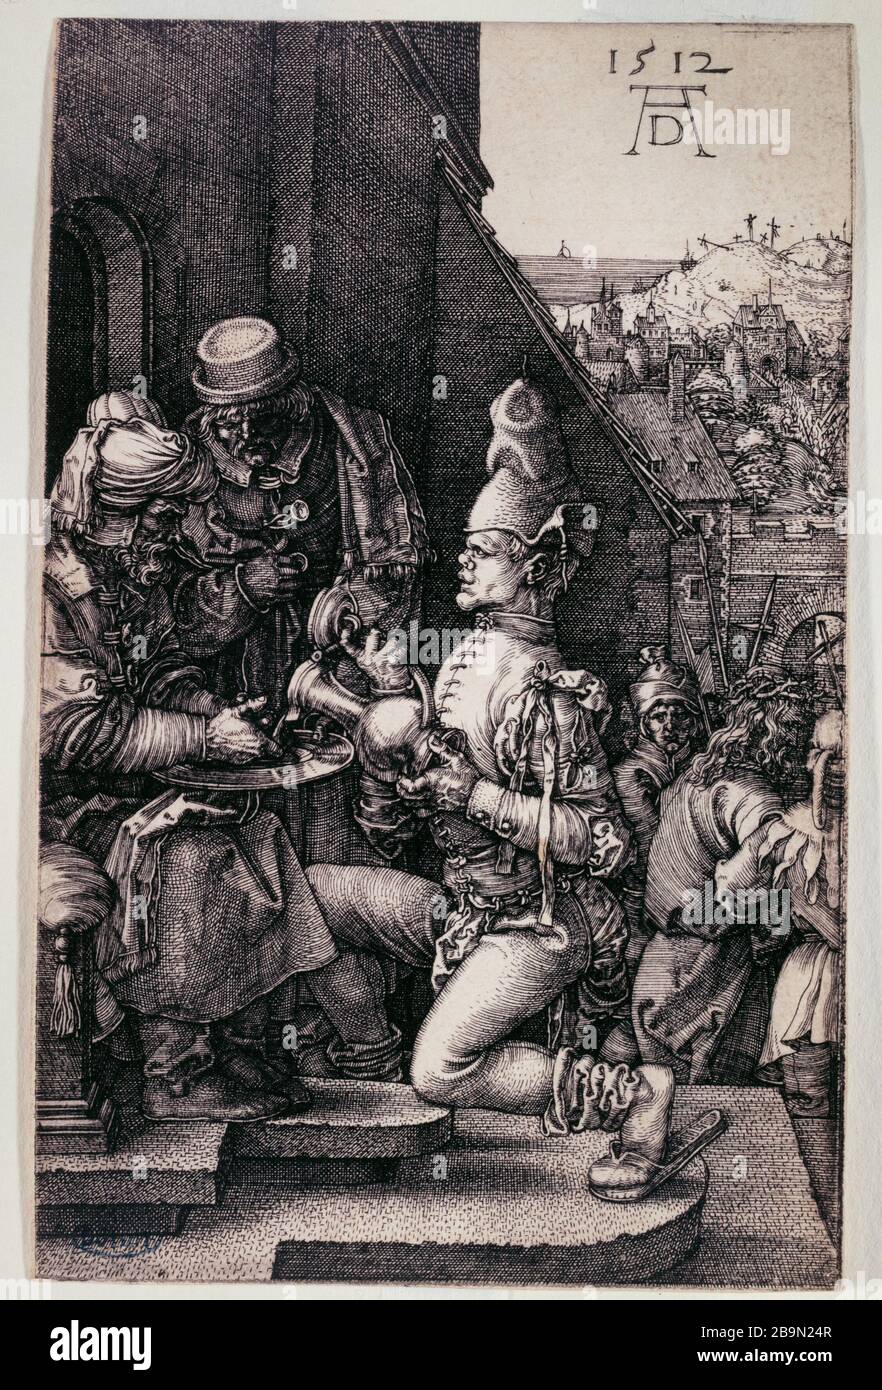 The Passion of copper: Pilate washing his hands (Bartsch 11) Albrecht Dürer (1471-1528). La Passion sur cuivre : Pilate se lavant les mains (Bartsch 11). 1512. Musée des Beaux-Arts de la Ville de Paris, Petit Palais. Stock Photo